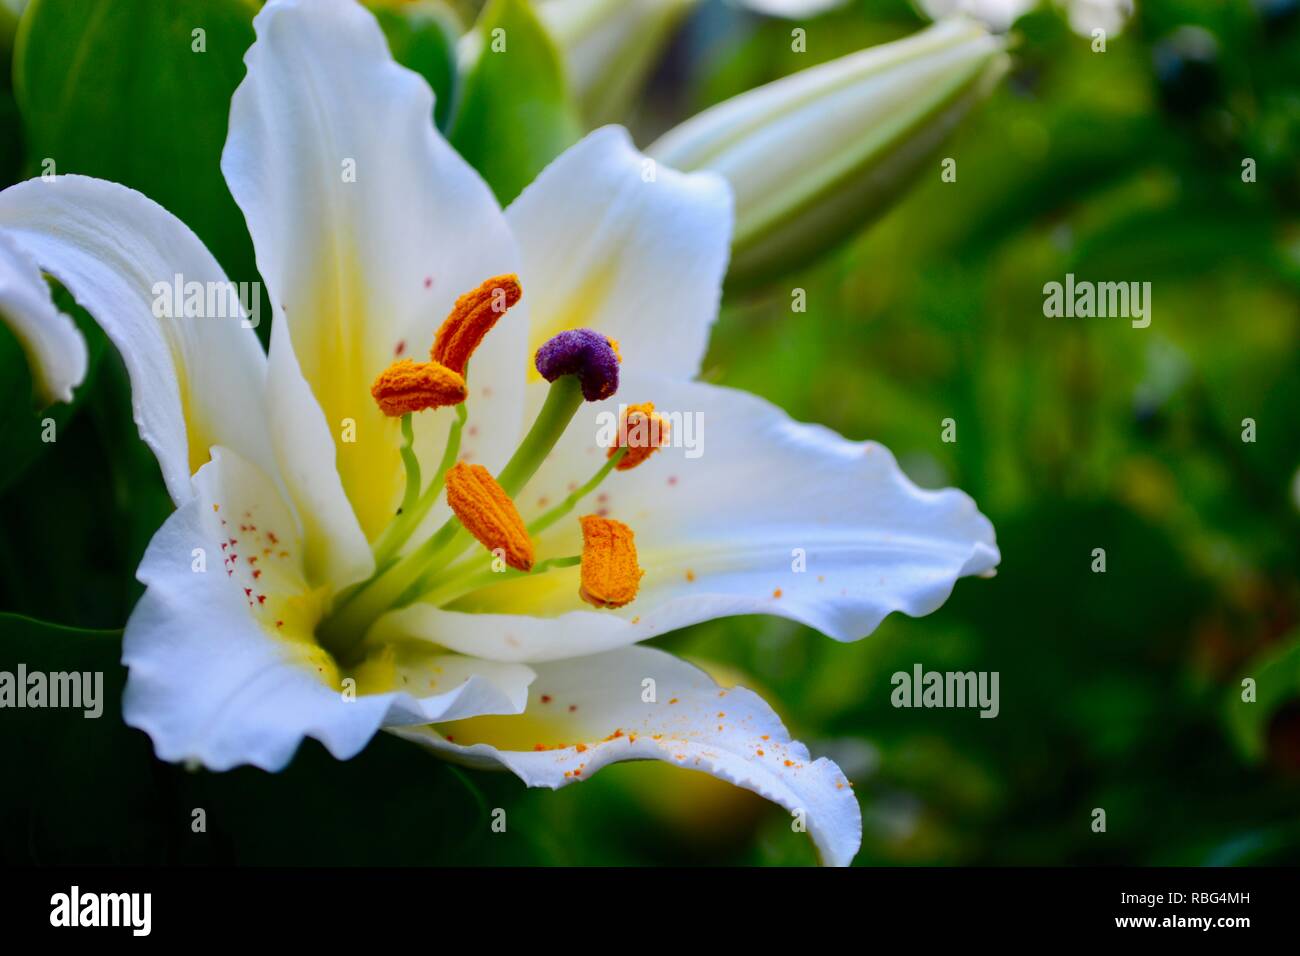 La flor más elegante del mundo fotografías e imágenes de alta resolución -  Alamy